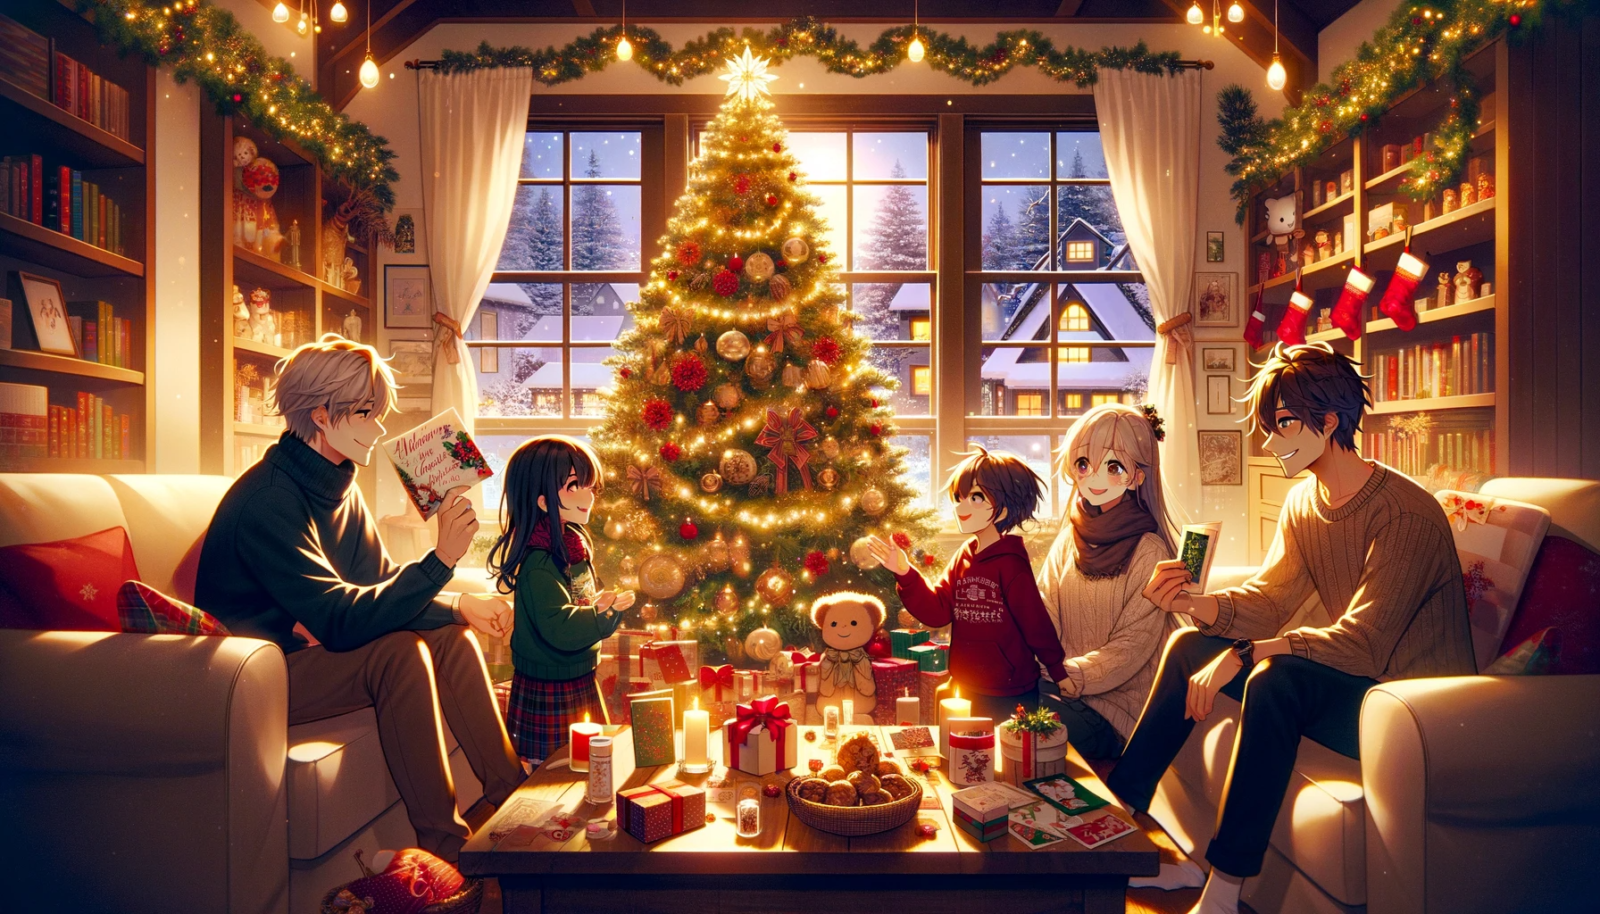 クリスマスには、可愛い言葉で愛情を伝える素敵な方法があります。この記事では、クリスマスメッセージの魅力と、家族や友人、恋人、子供への可愛いメッセージの文例を探求します。心温まるクリスマスカードやギフトに込める言葉のアイデアをご提供します。クリスマスの特別な瞬間をより特別にするためのインスピレーションを見つけましょう。